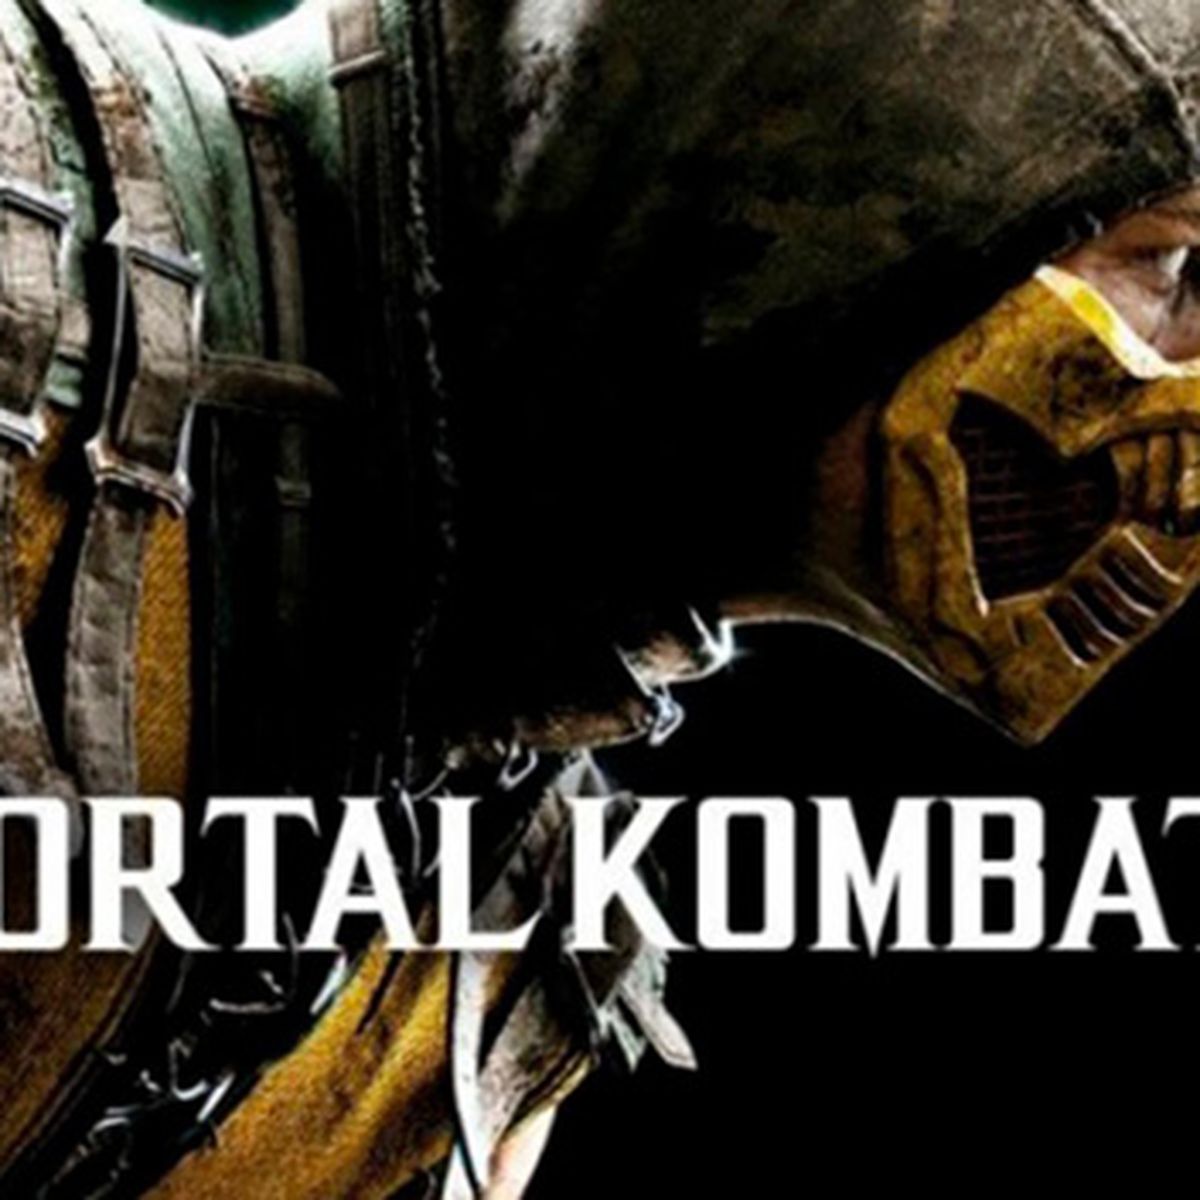 Mortal Kombat XL, PC